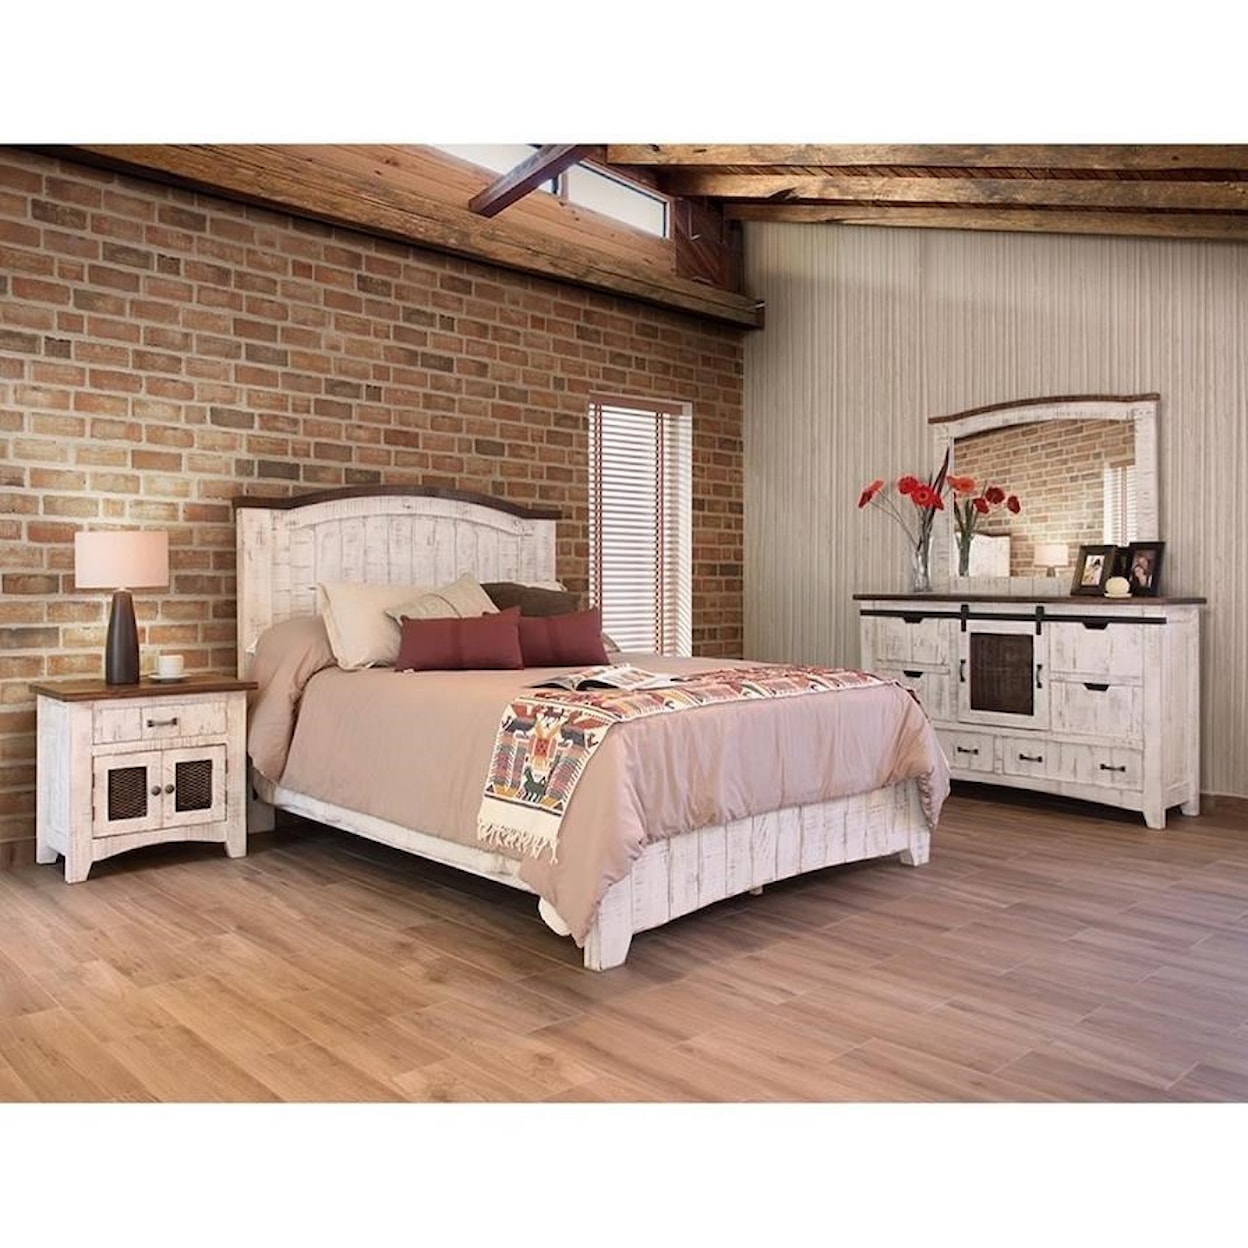 International Furniture Direct Pueblo Queen Bedroom Group